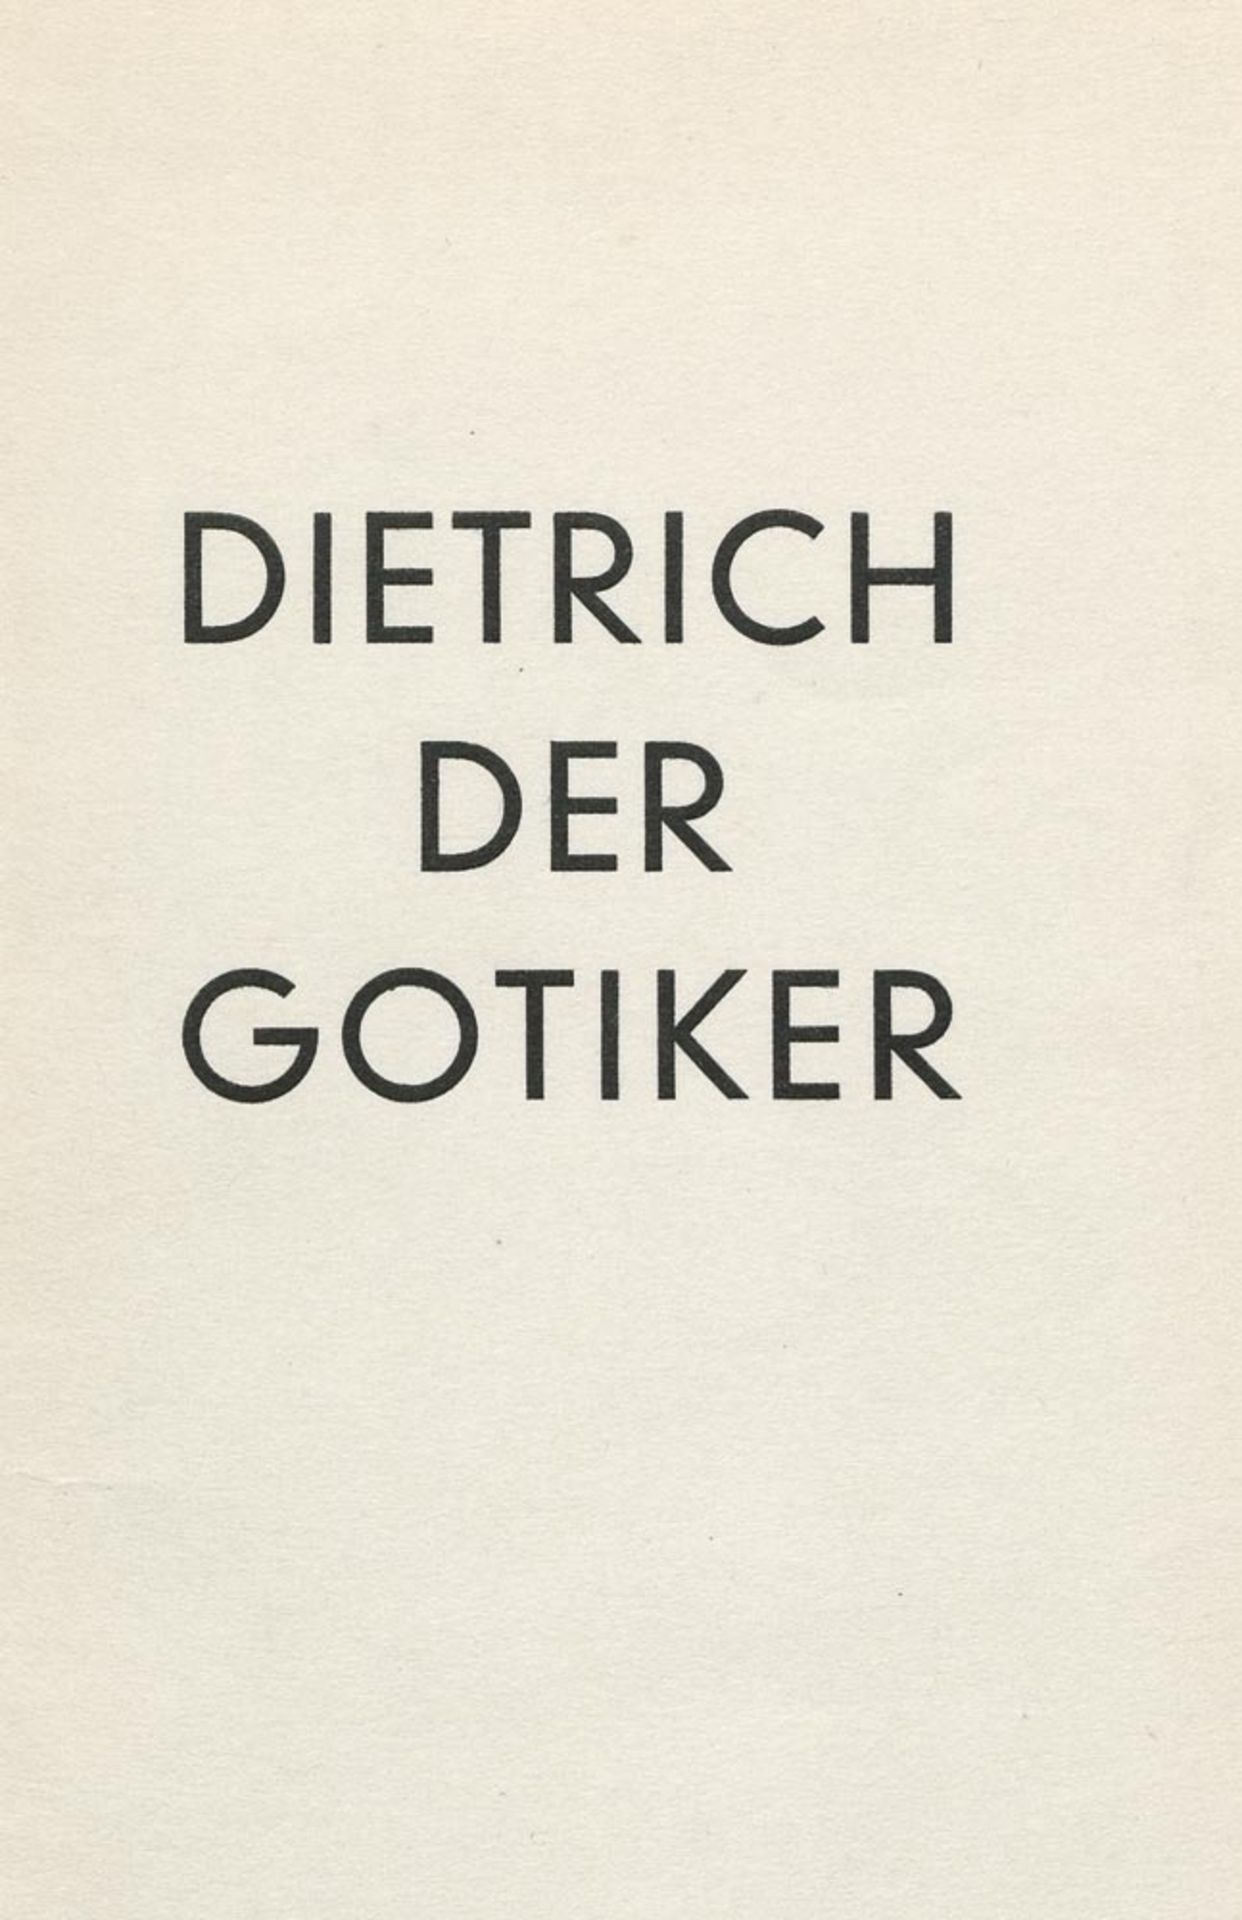 Dietrich, Rudolf Adrian: Der Gotiker